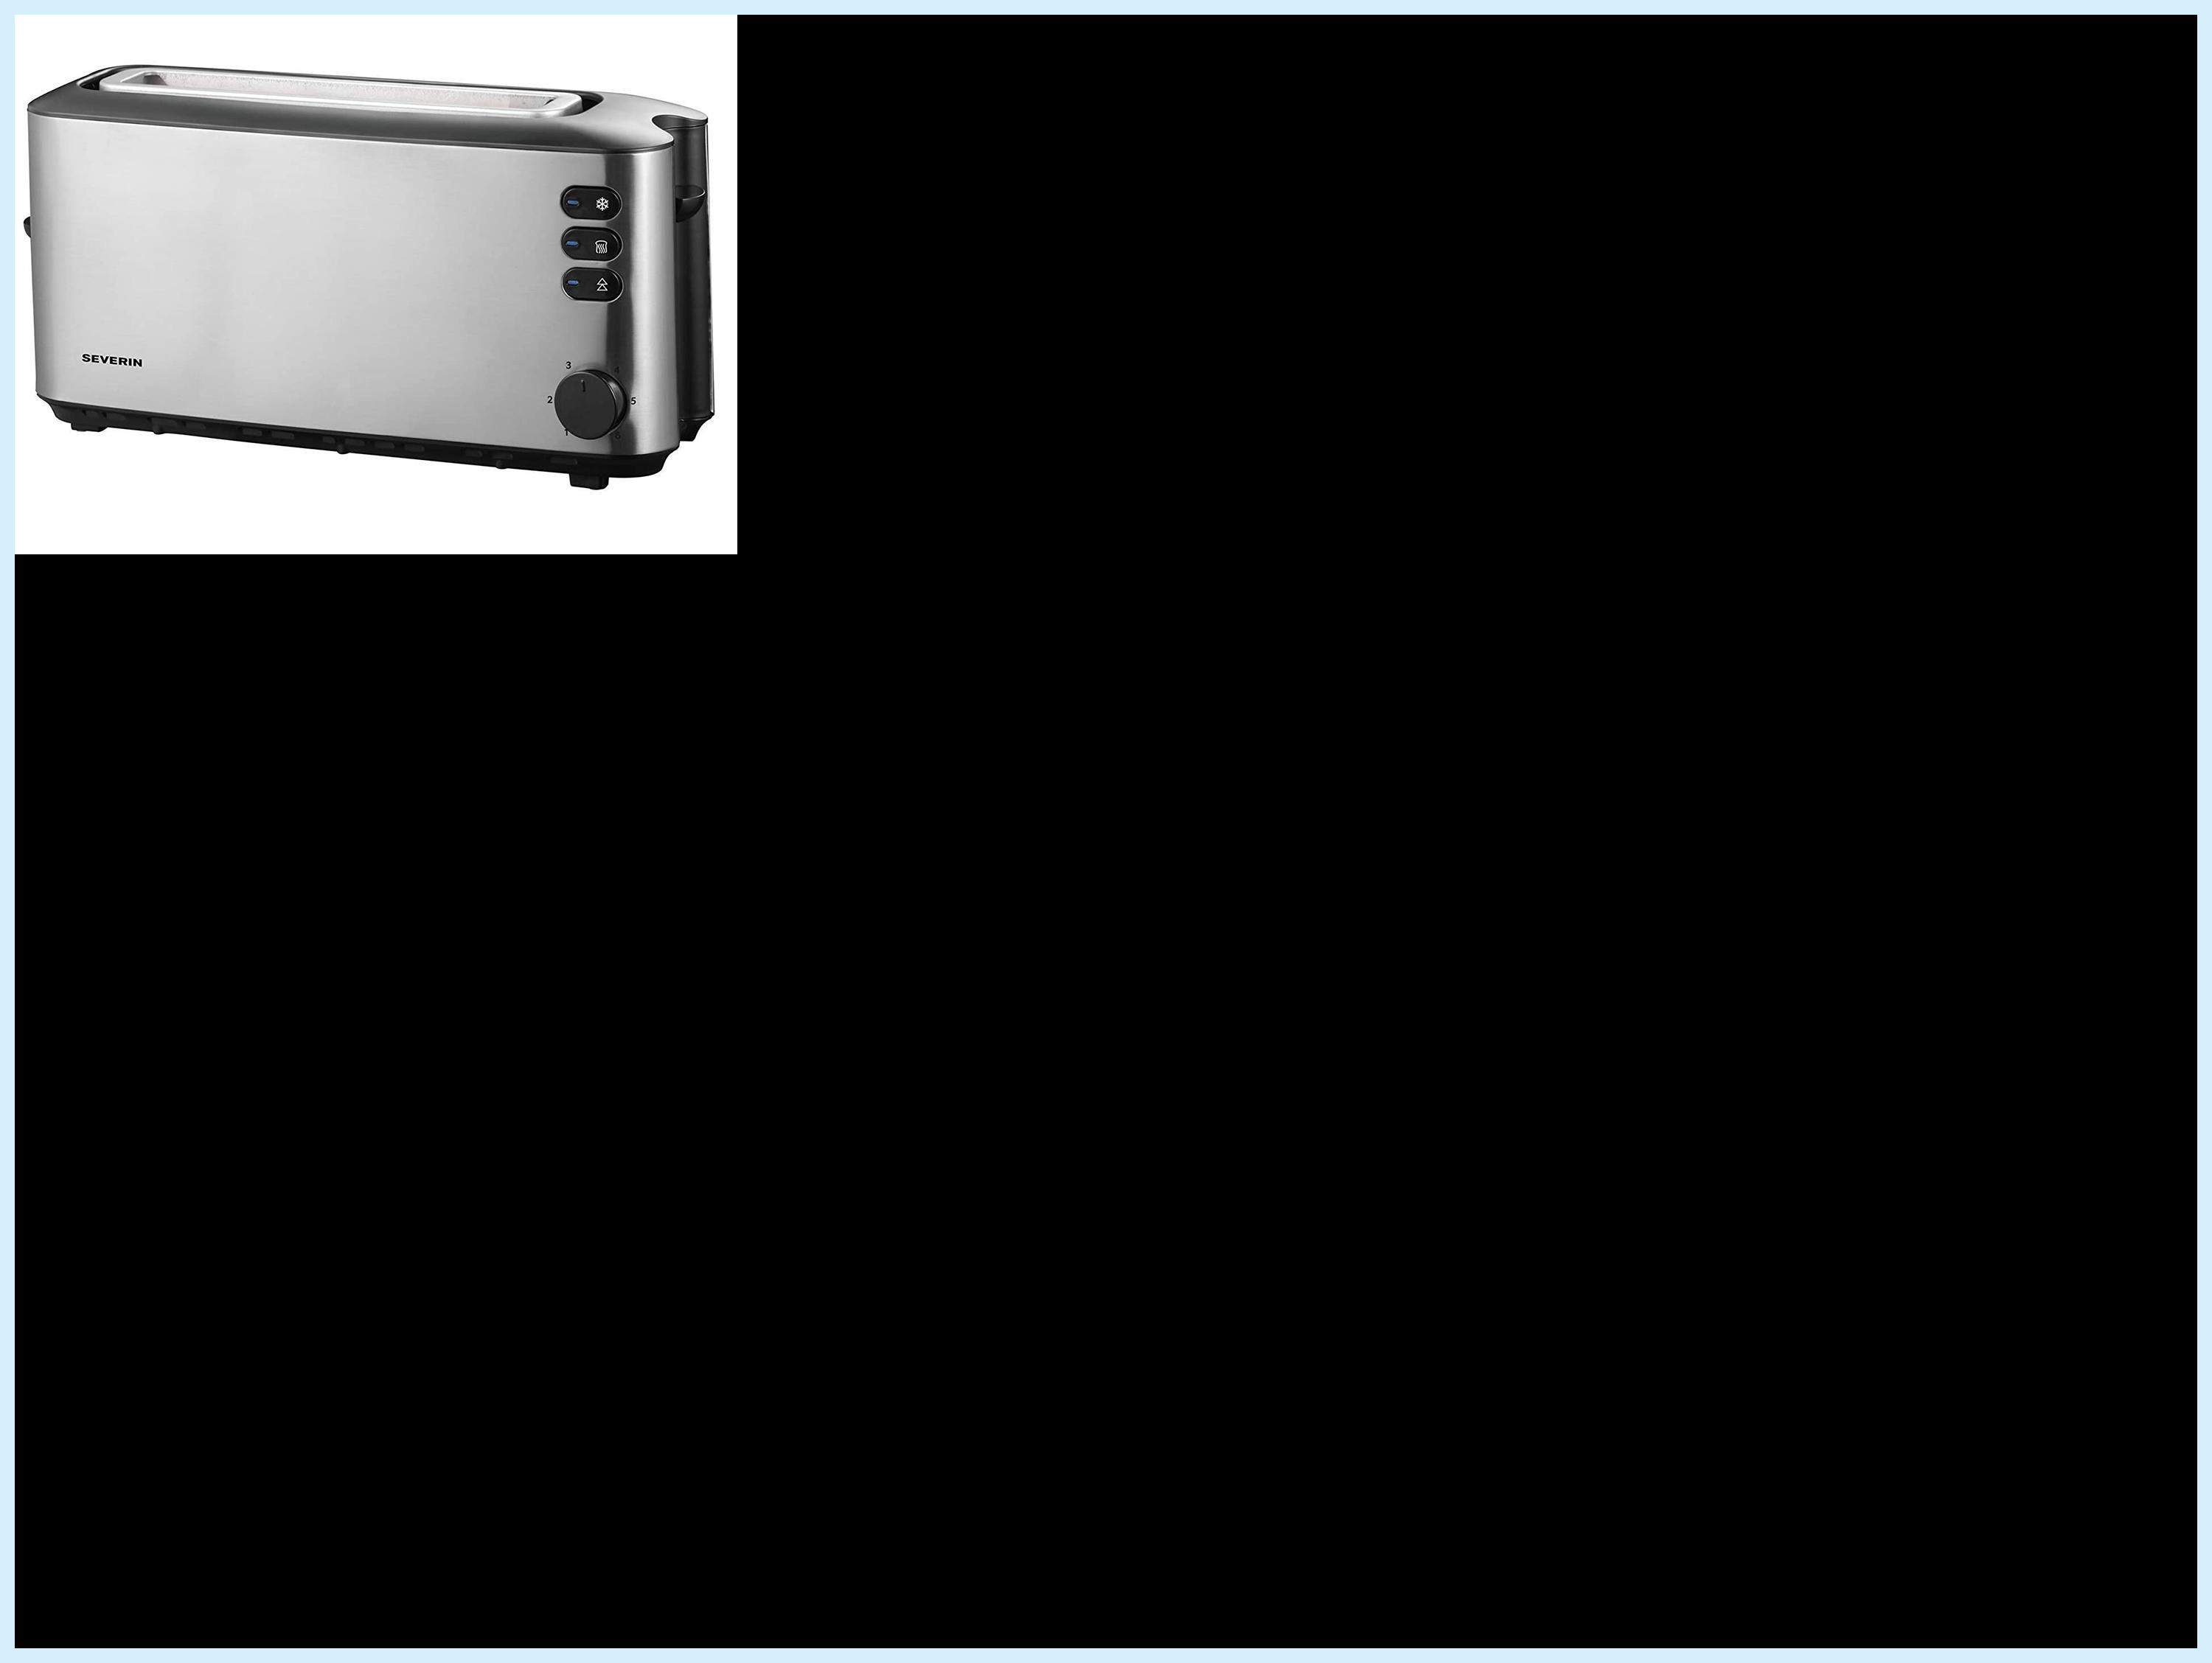 2) Watt, Toaster Silber Schlitze: AT2515 (1000 SEVERIN